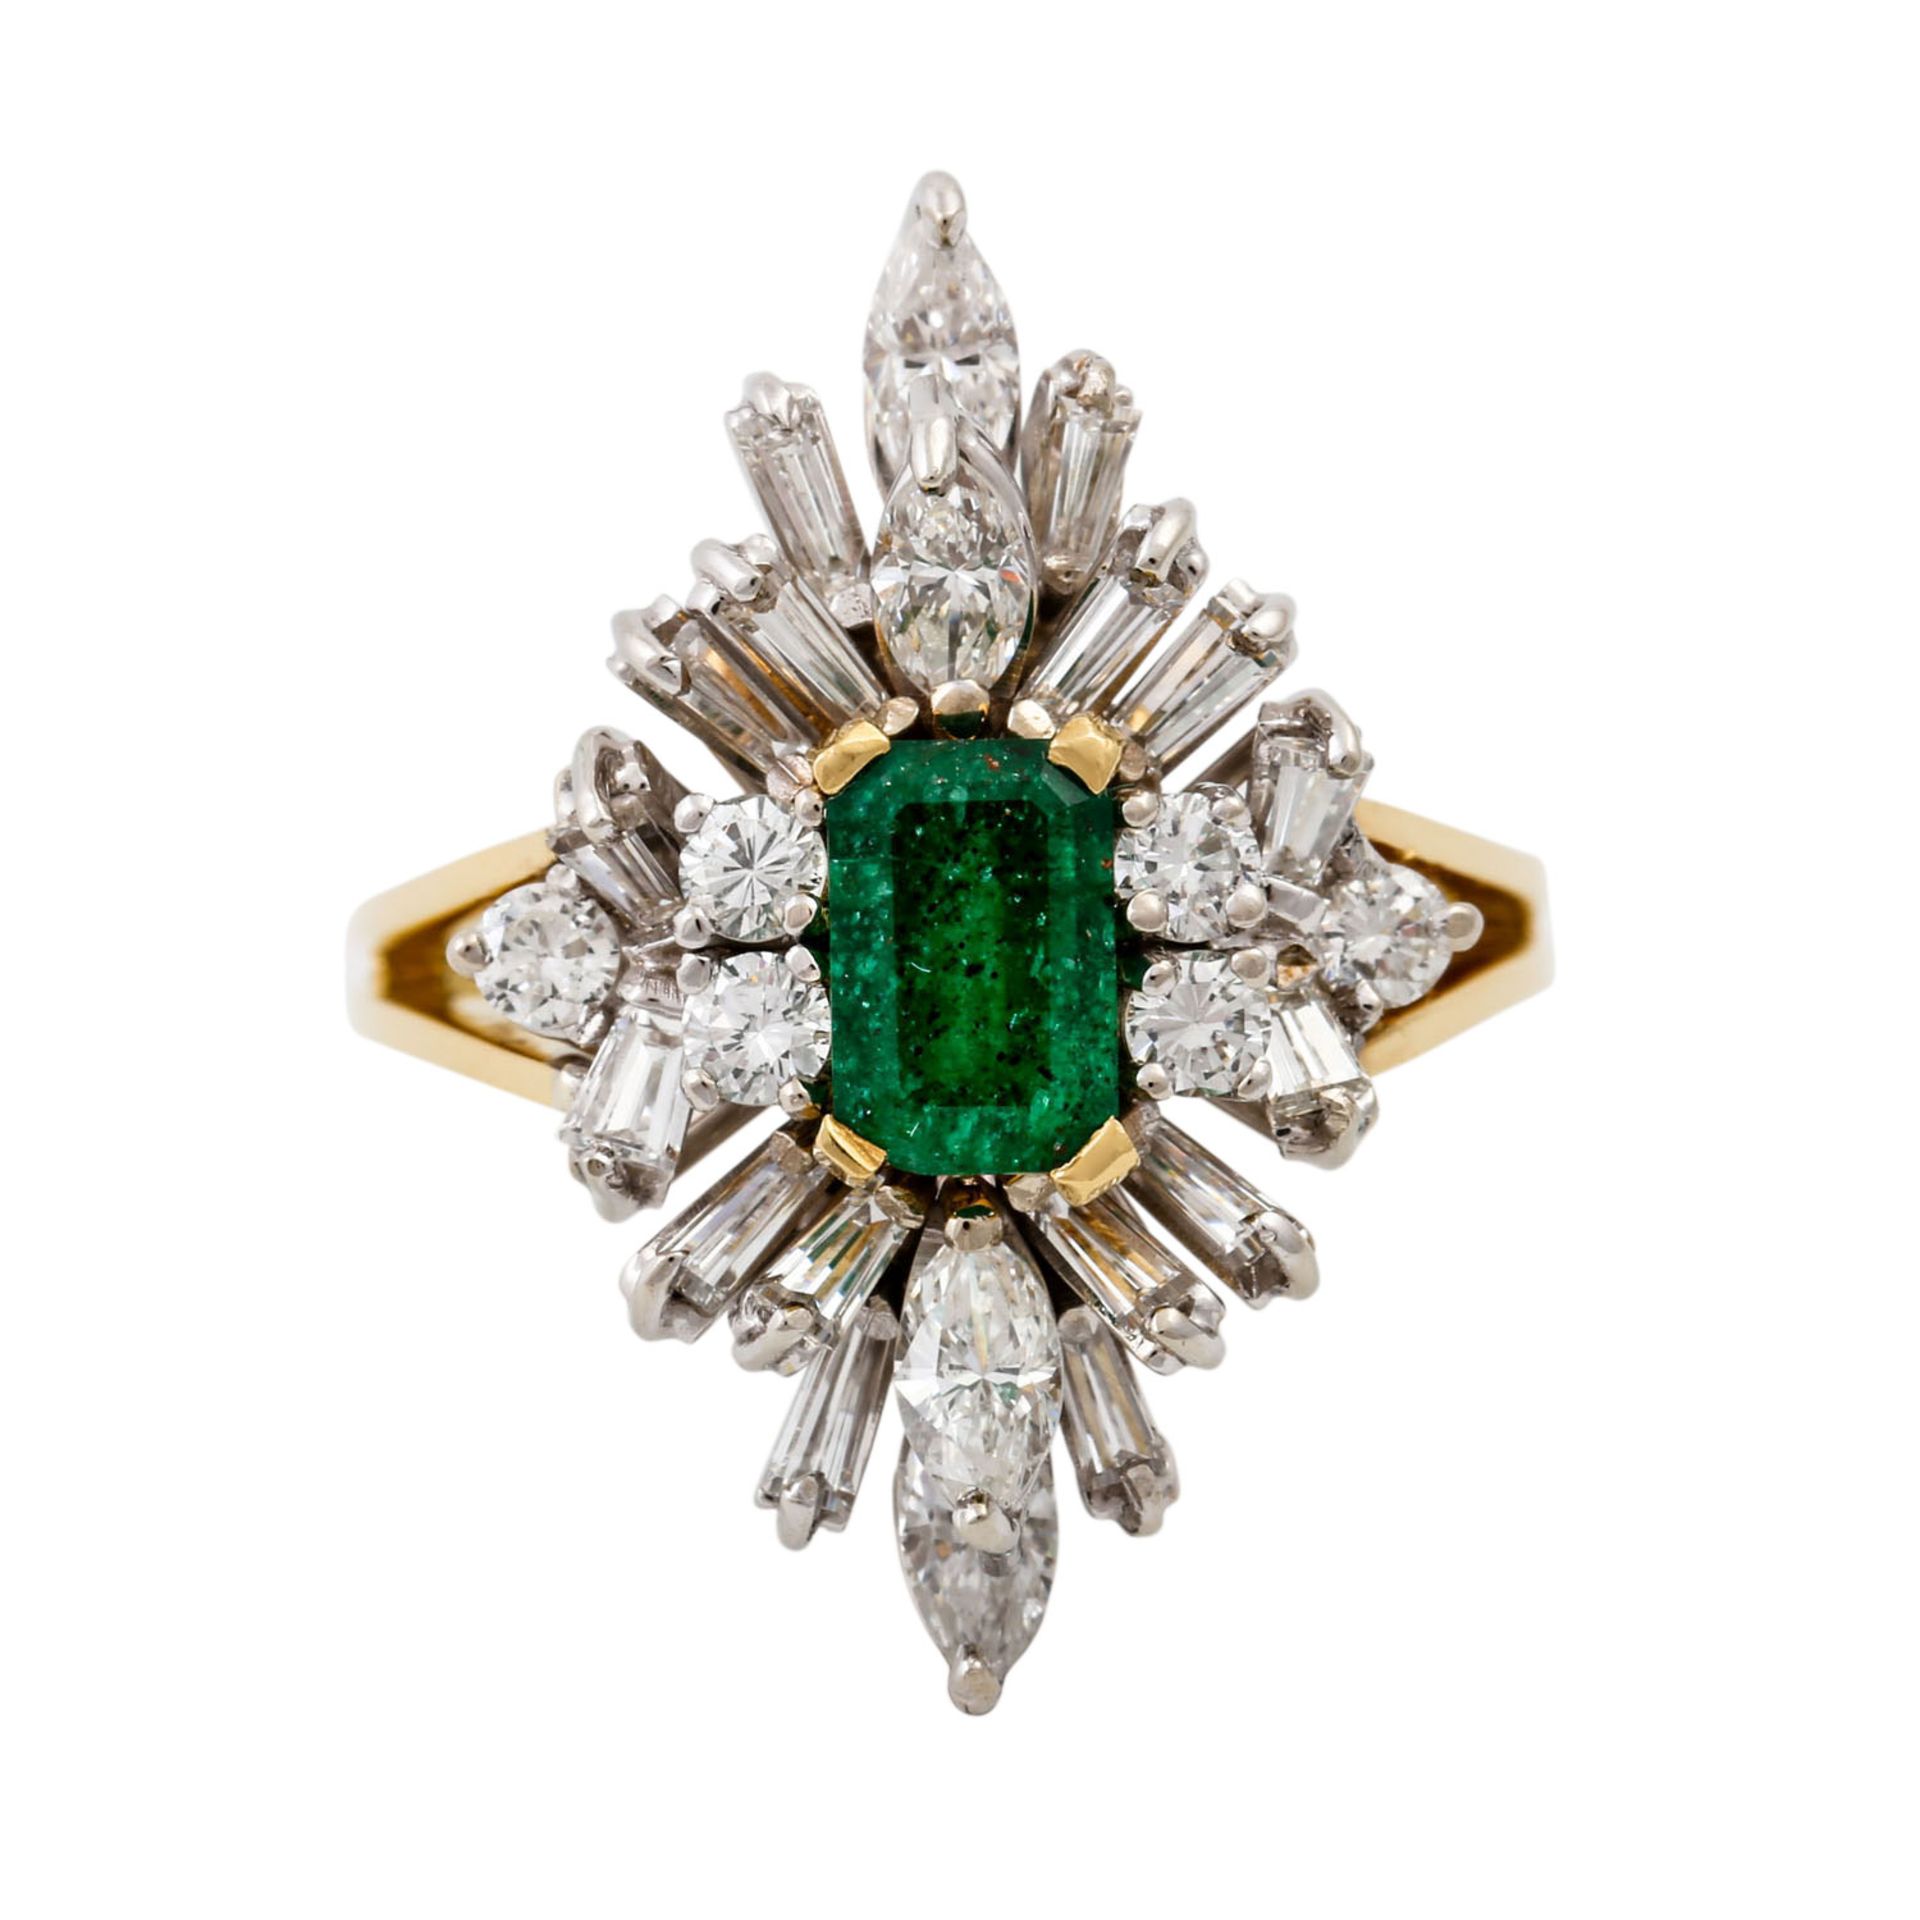 Ring mit Smaragd und Diamanten zus. ca. 1 ct,gute Farbe u. Reinheit, GG/WG 18K, 7,4 gr - Bild 2 aus 4